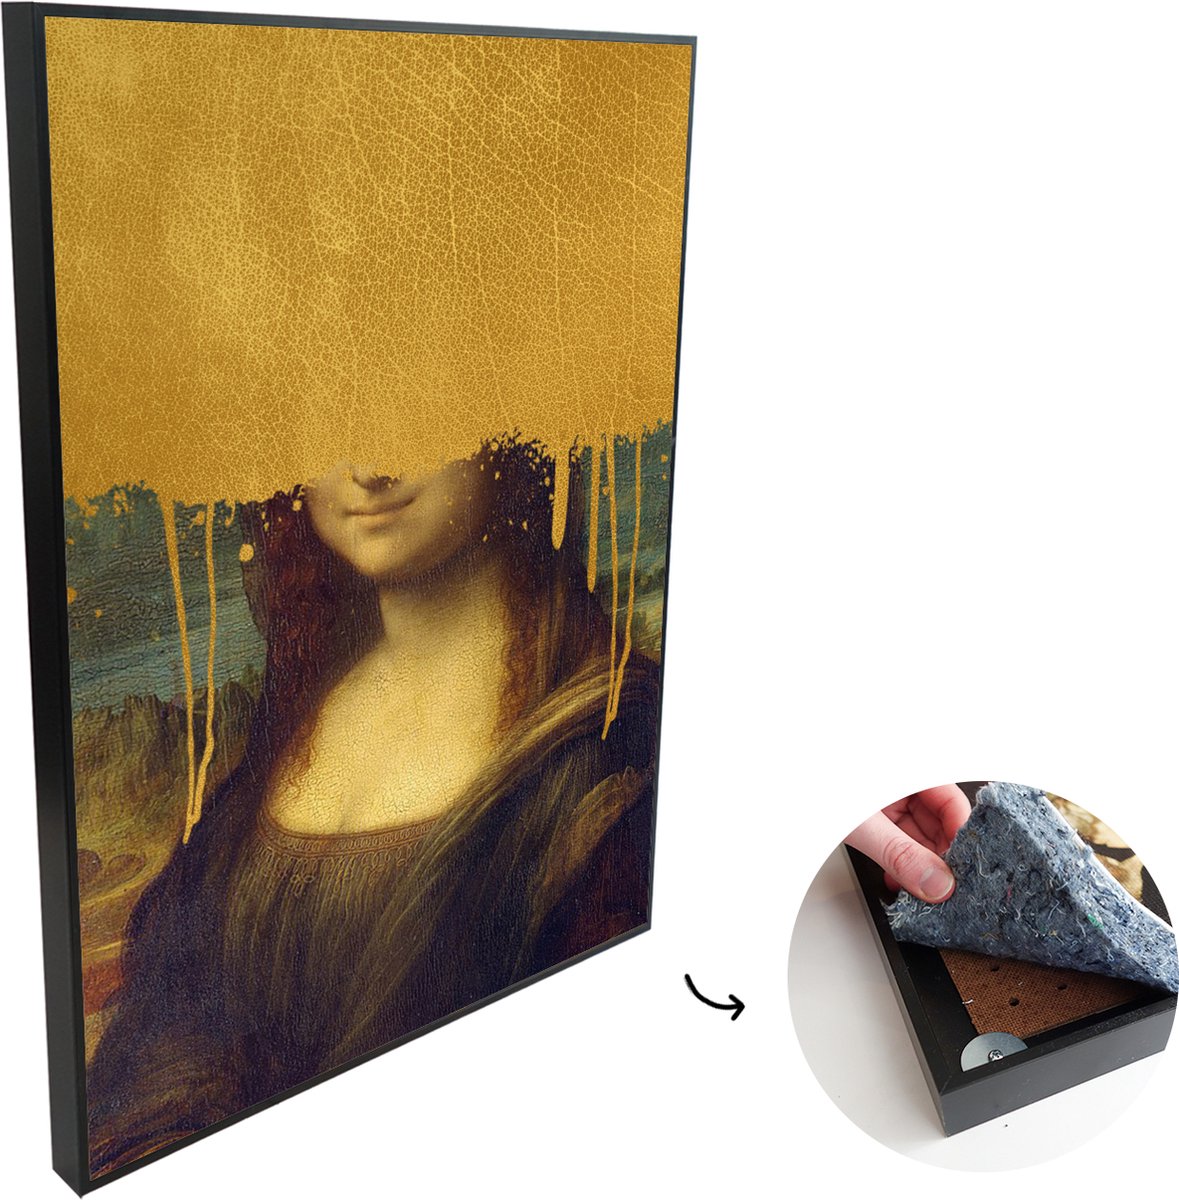 Akoestische Panelen - Geluidsisolatie - Akoestisch Wandpaneel - Wanddecoratie - Schilderij - 120x180 cm - Mona Lisa - Da Vinci - Goud - Geluidsdemper - Isolatie platen - Studio Schuim